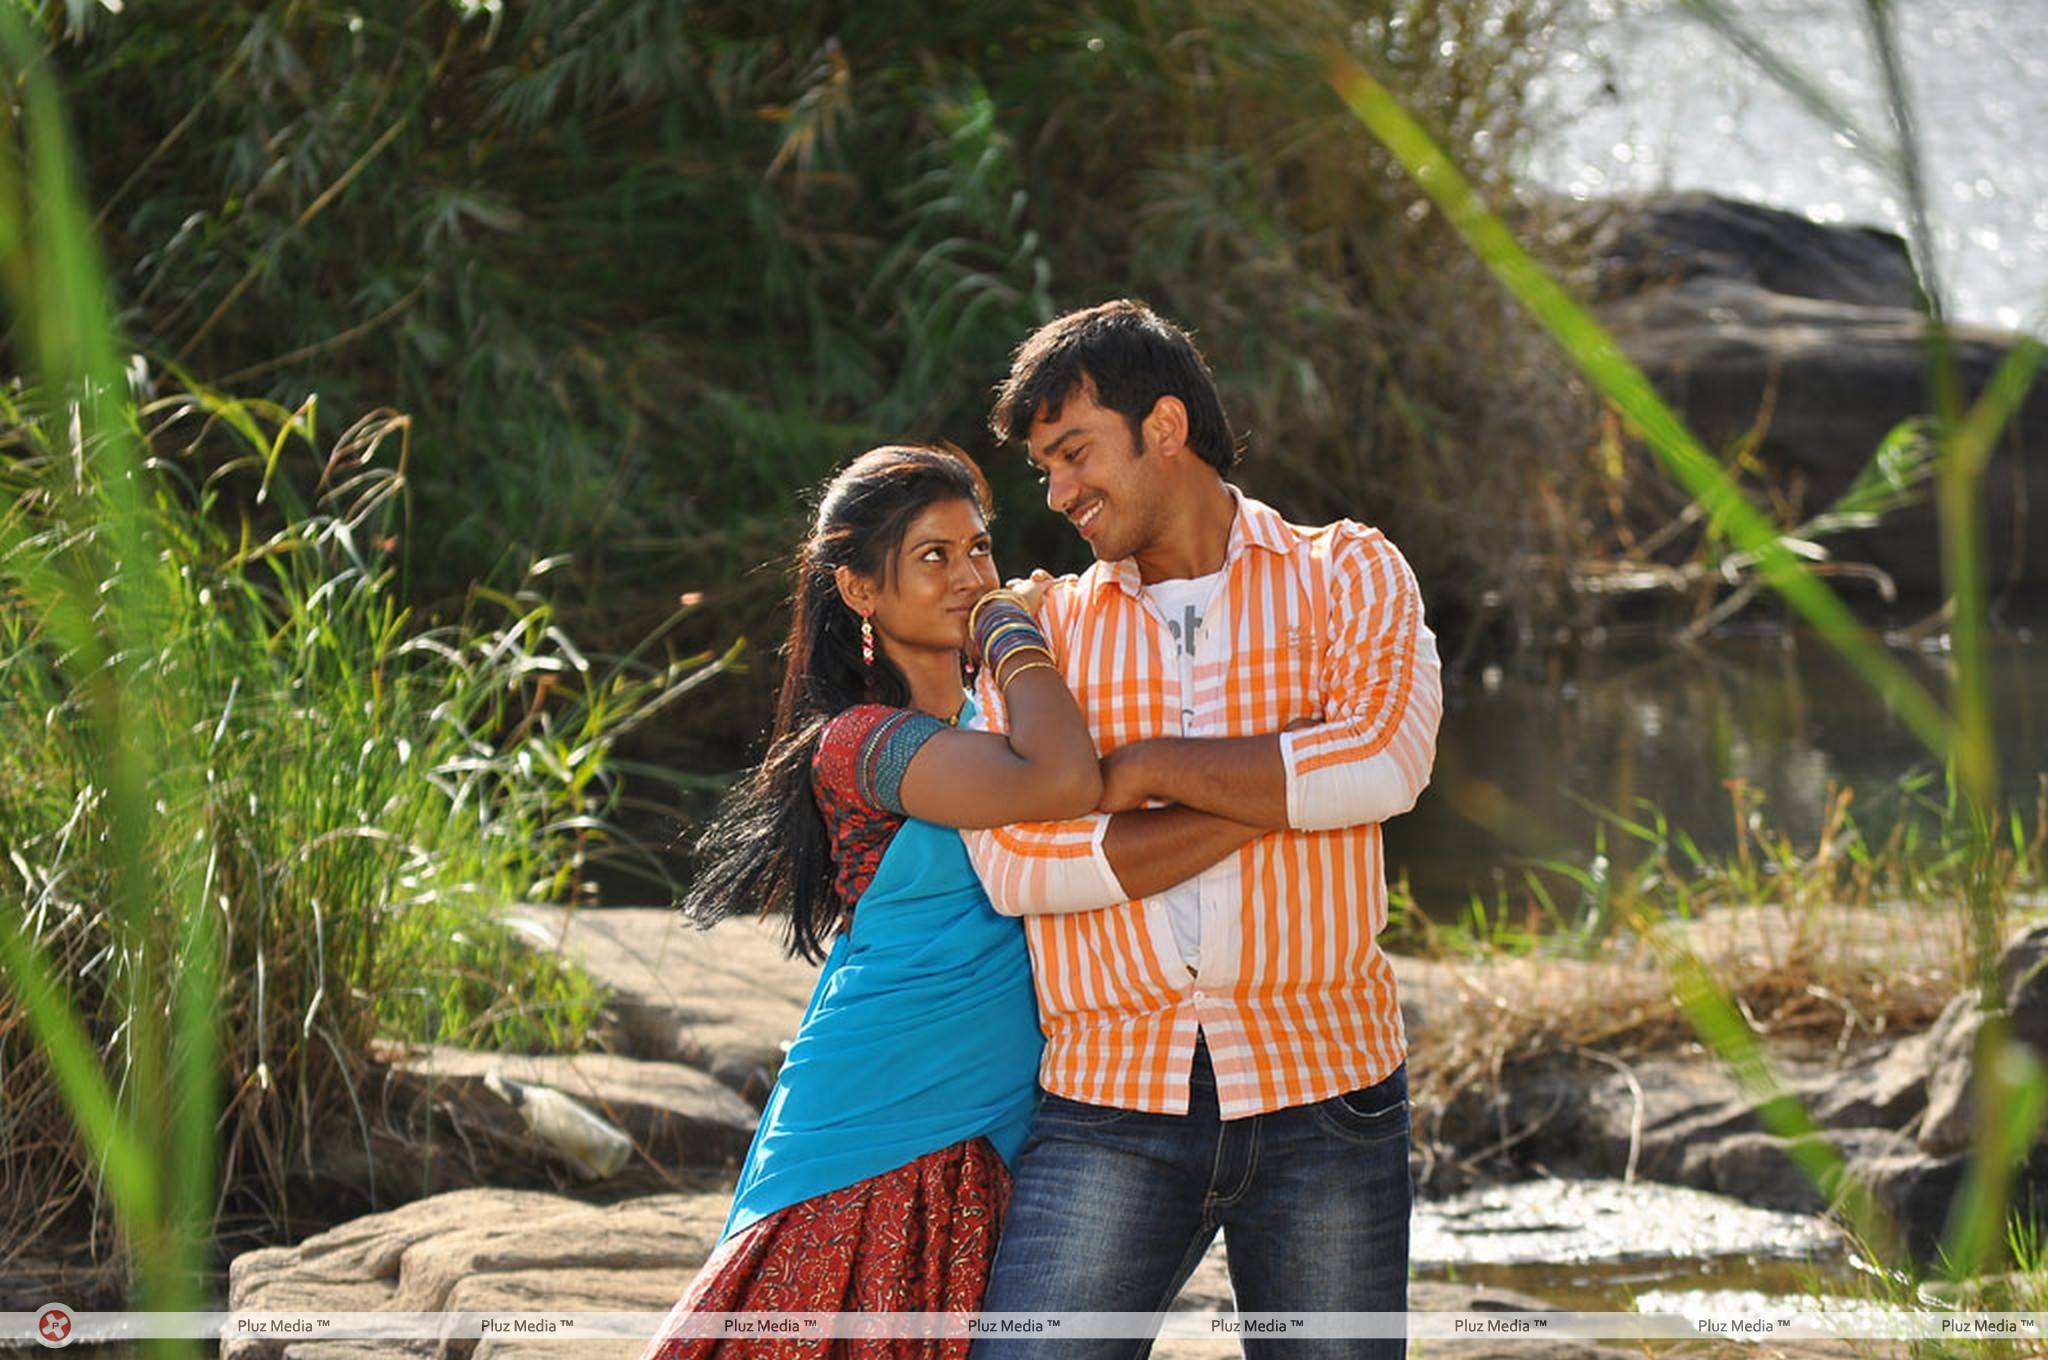 Virudhalaam Pattu Movie  Hot Stills | Picture 451367